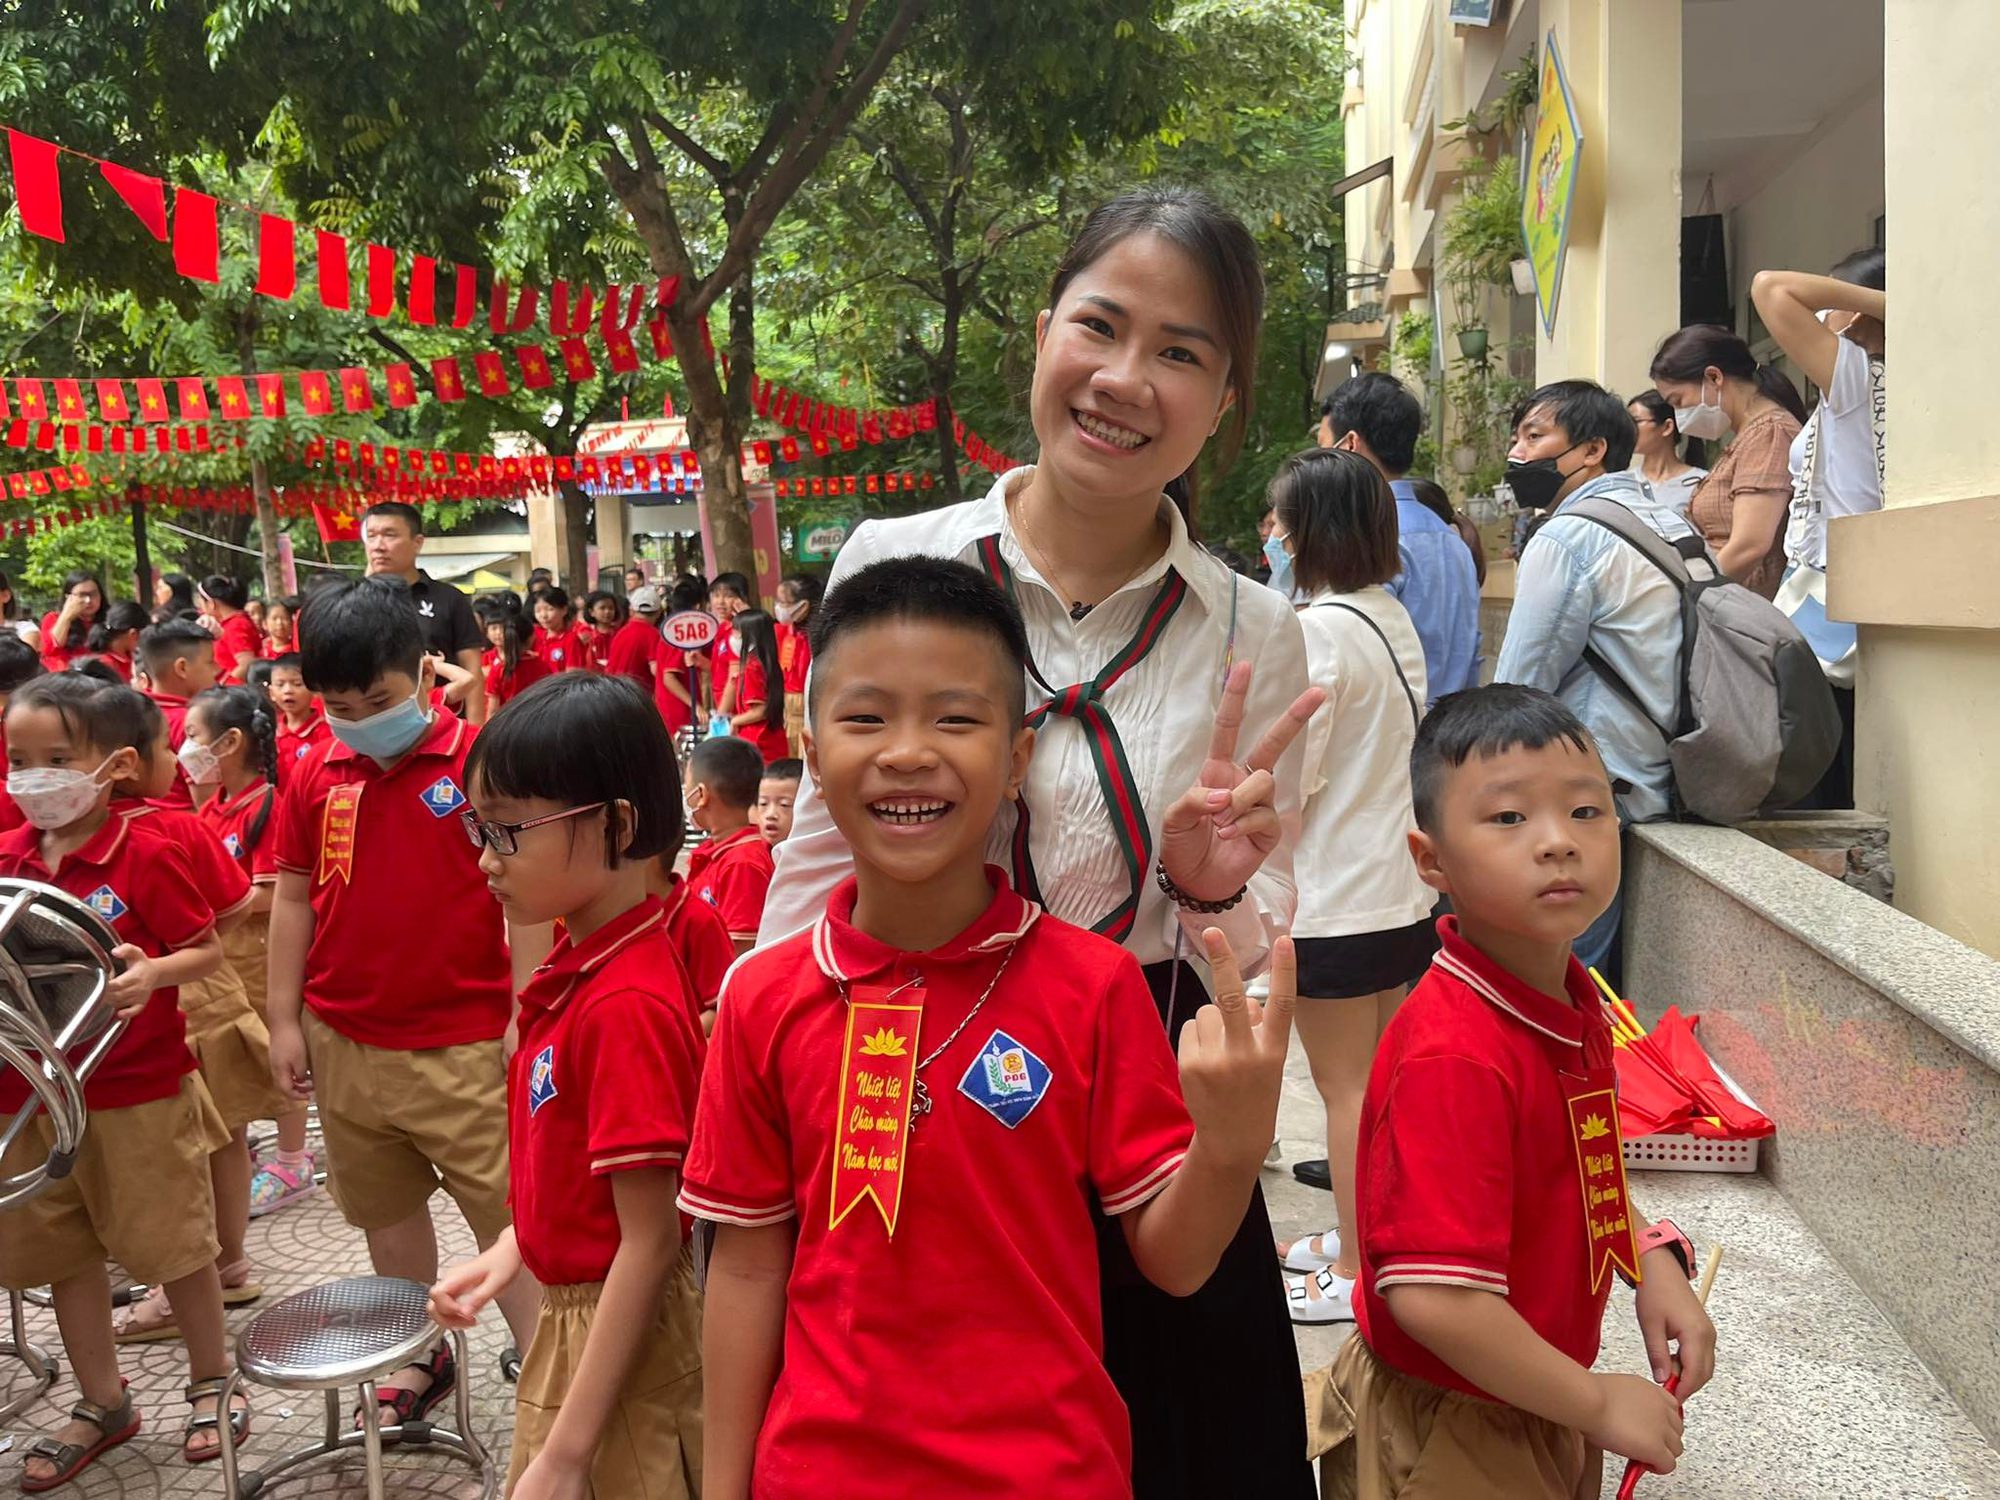 Loạt khoảnh khắc cưng xỉu trong ngày lễ Khai giảng của trẻ cấp 1 ở Hà Nội: Ngủ gật những vẫn... vẫy cờ - Ảnh 1.